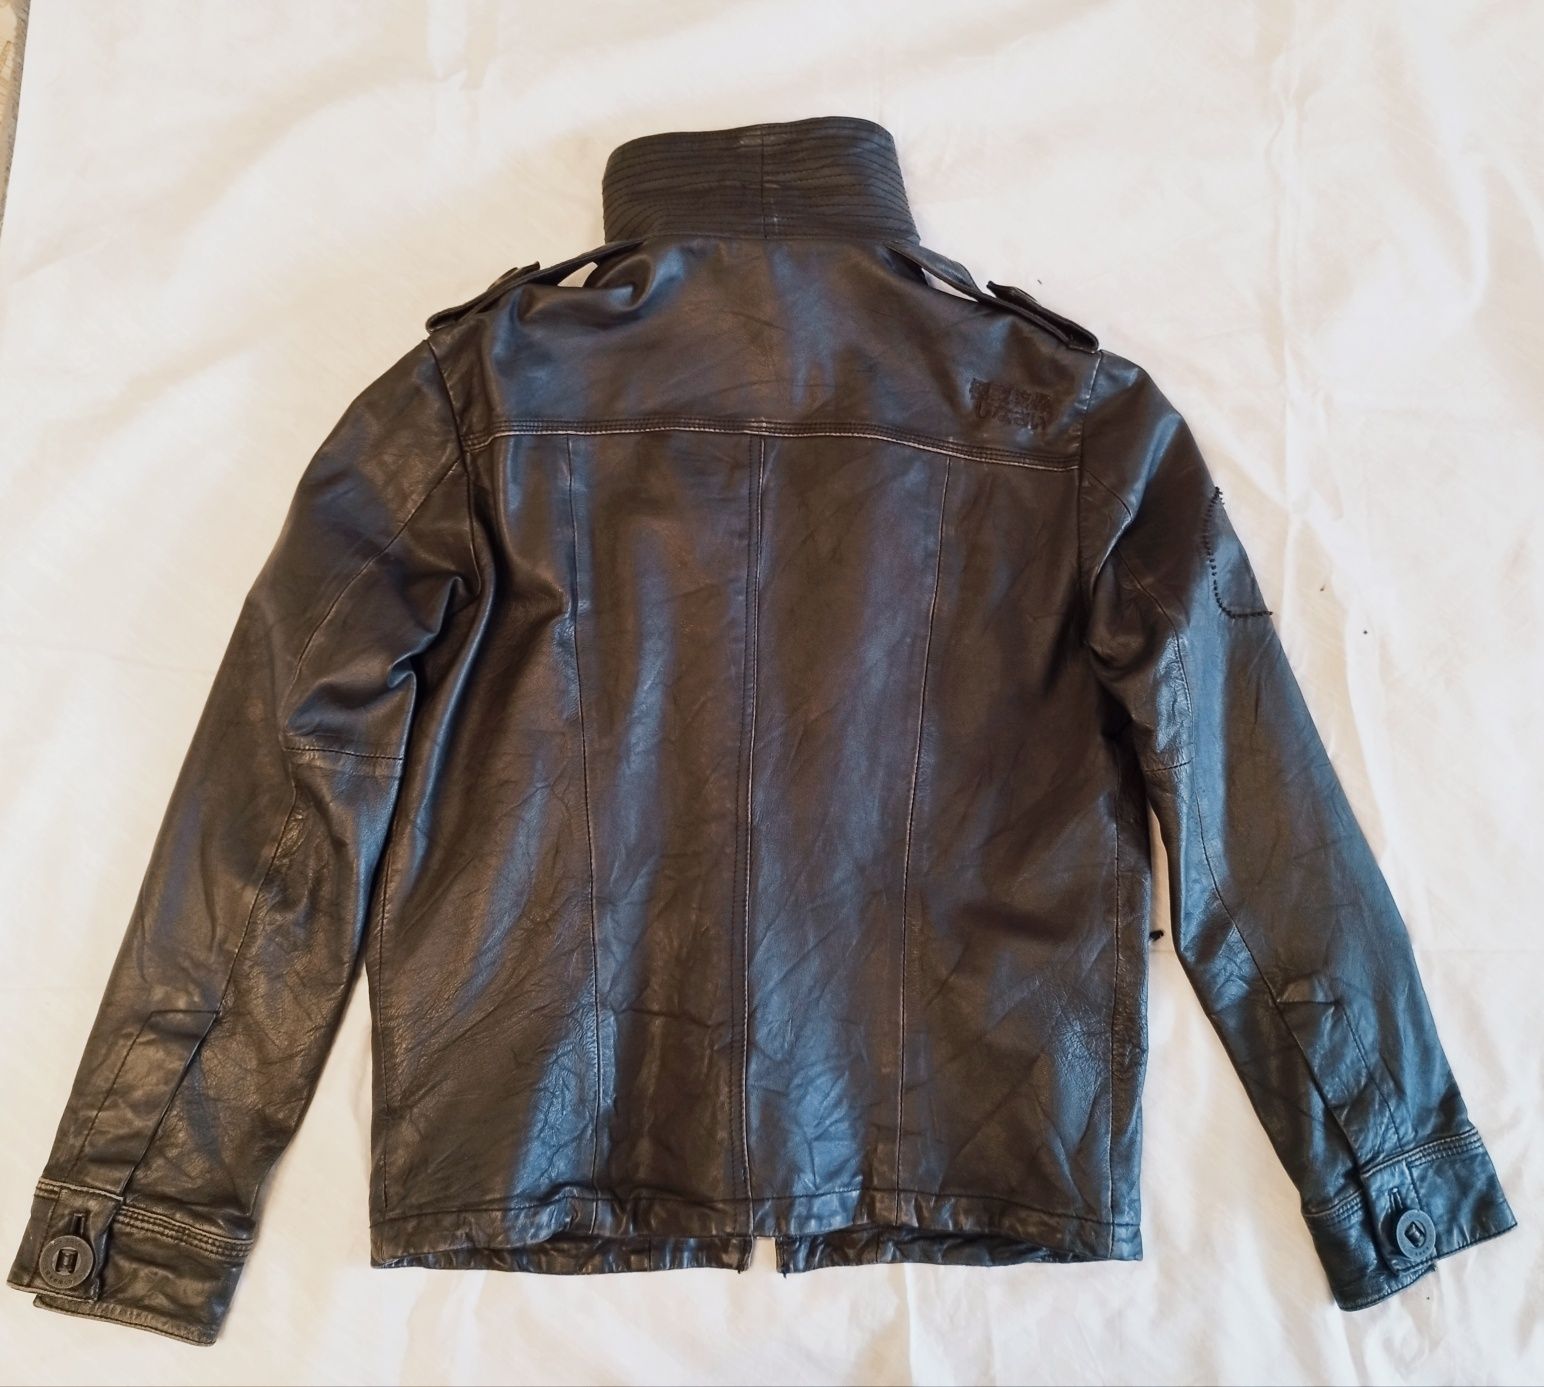 Jachetă bărbătească Superdry din piele, mărimea M.

Descriere:
Brand -